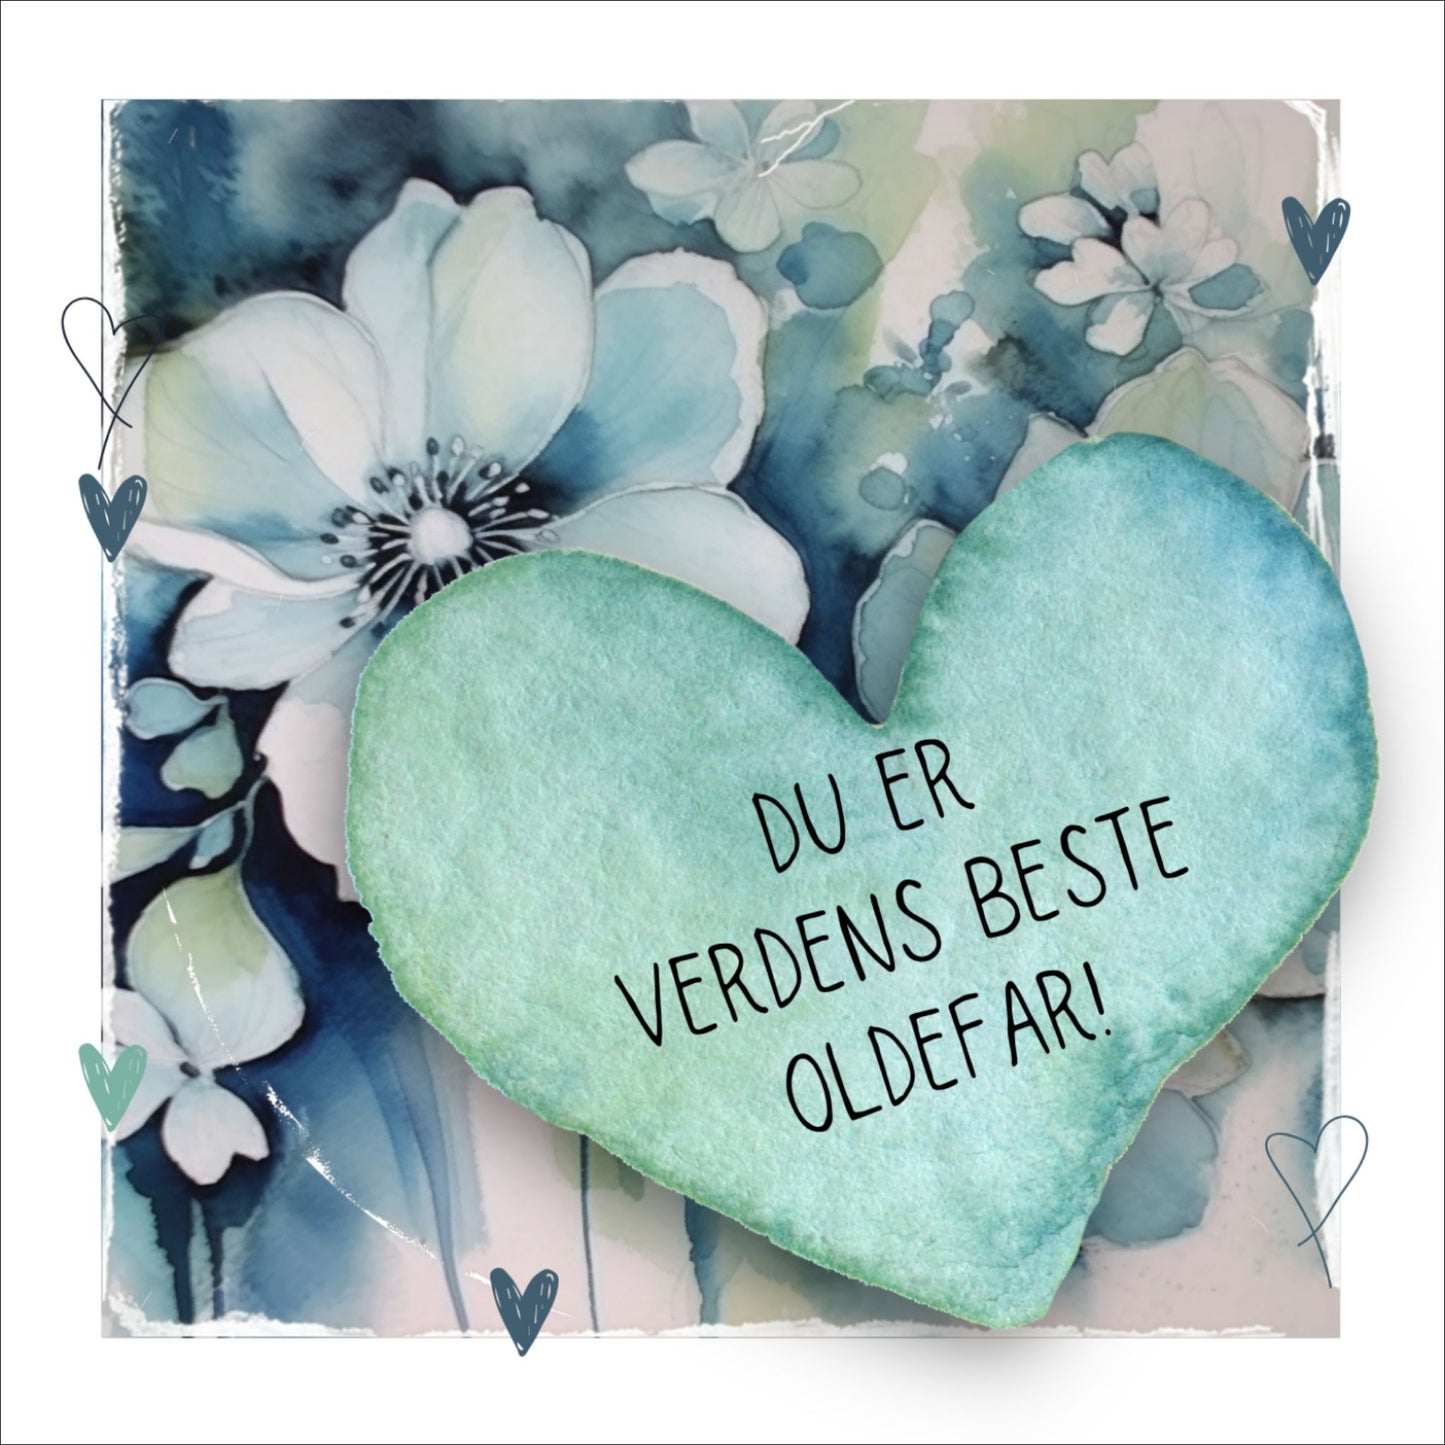 Grafisk plakat med et lyseblått hjerte påført tekst "Du er verdens beste oldefar!". Bagrunn med blomster i blåtoner. Kortet har en hvit kant rundt på 1,5 cm.